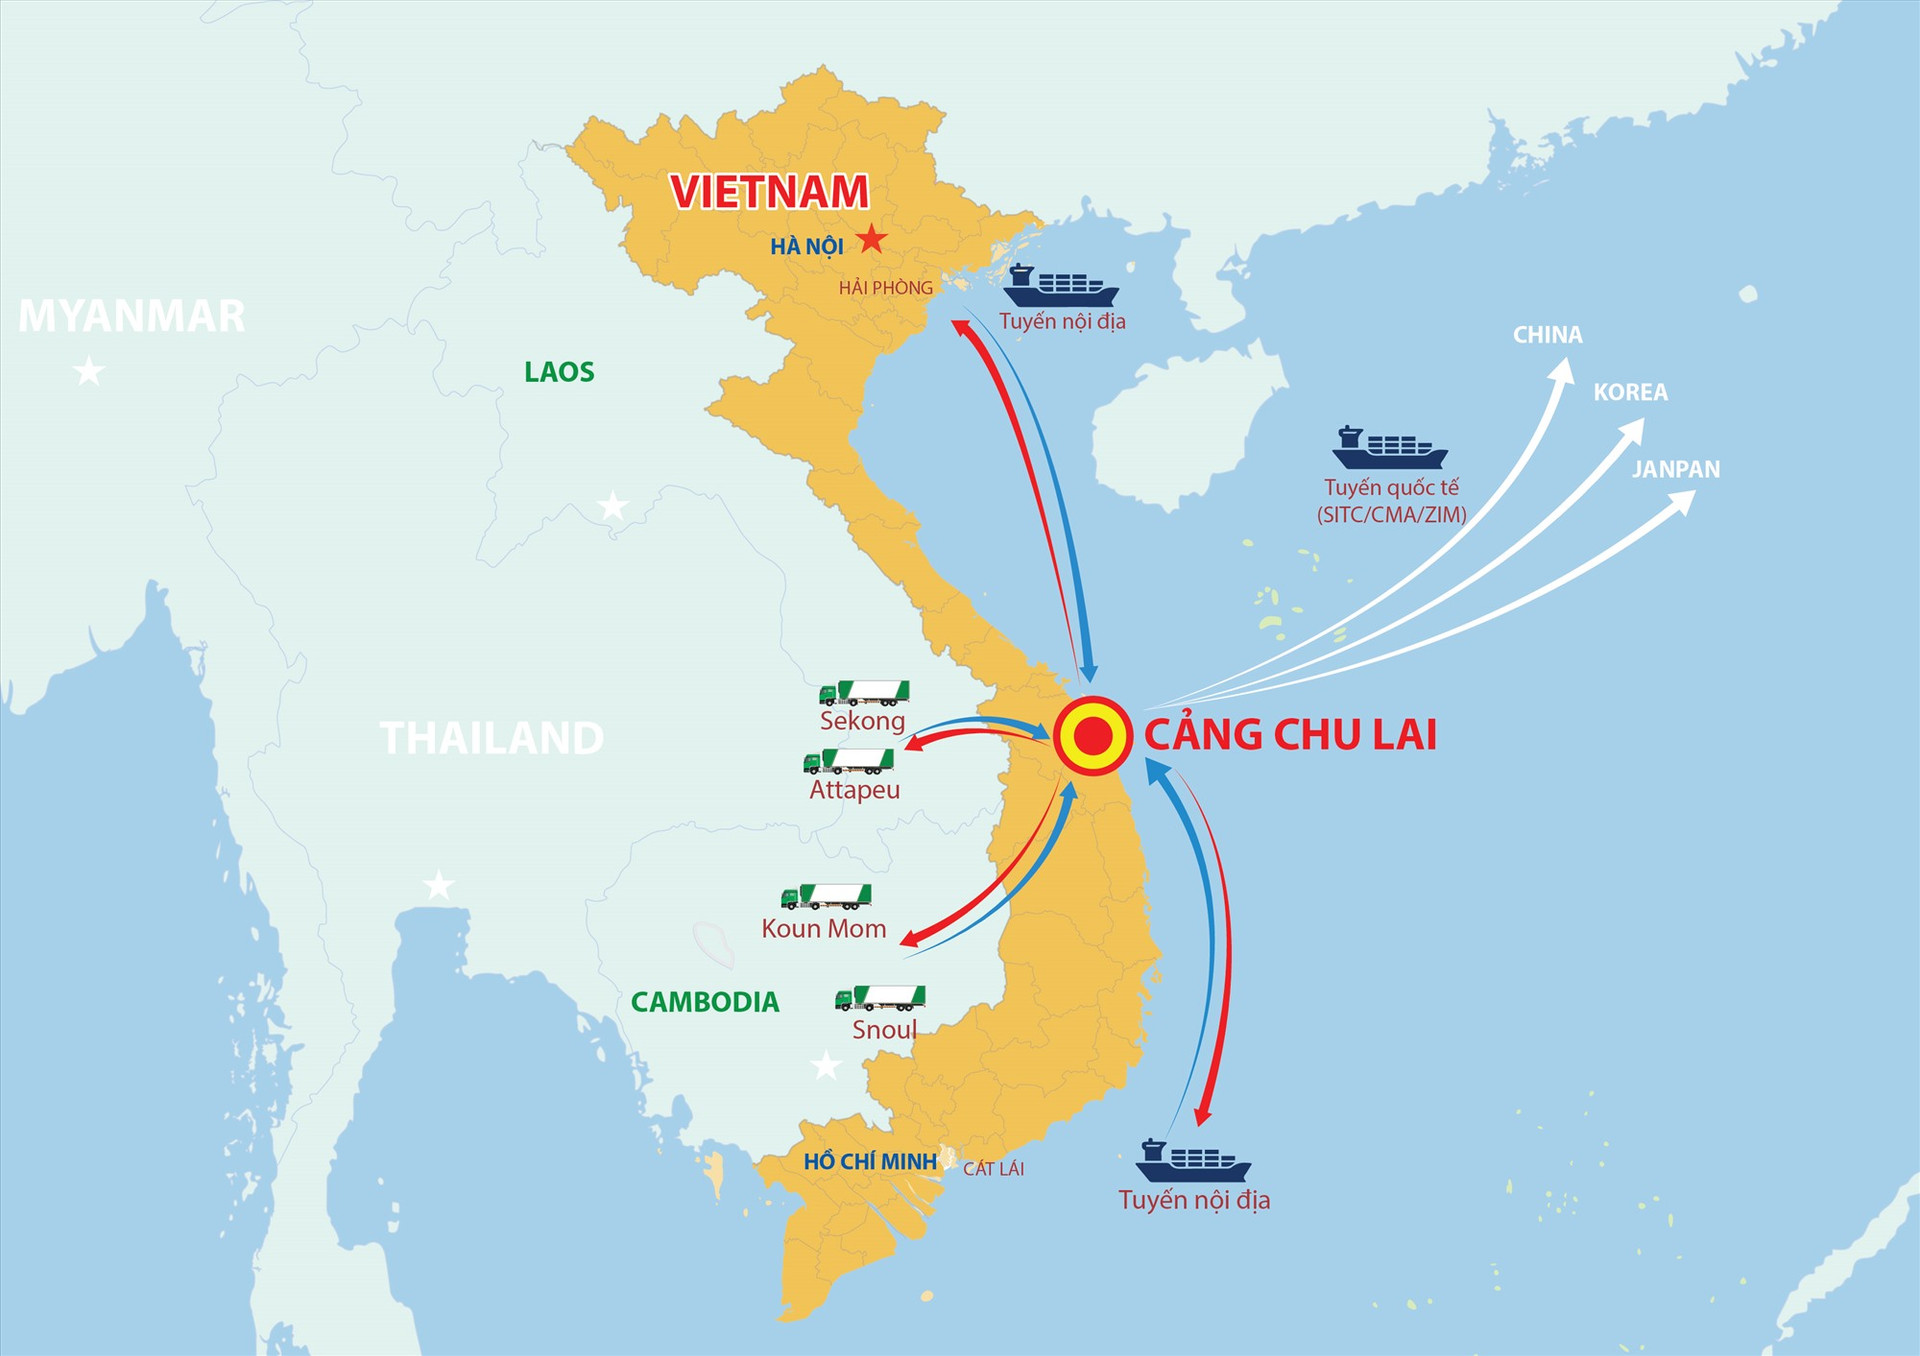 THILOGI Chu Lai – trung tâm giao nhận vận chuyển hàng hóa quốc tế của khu vực.